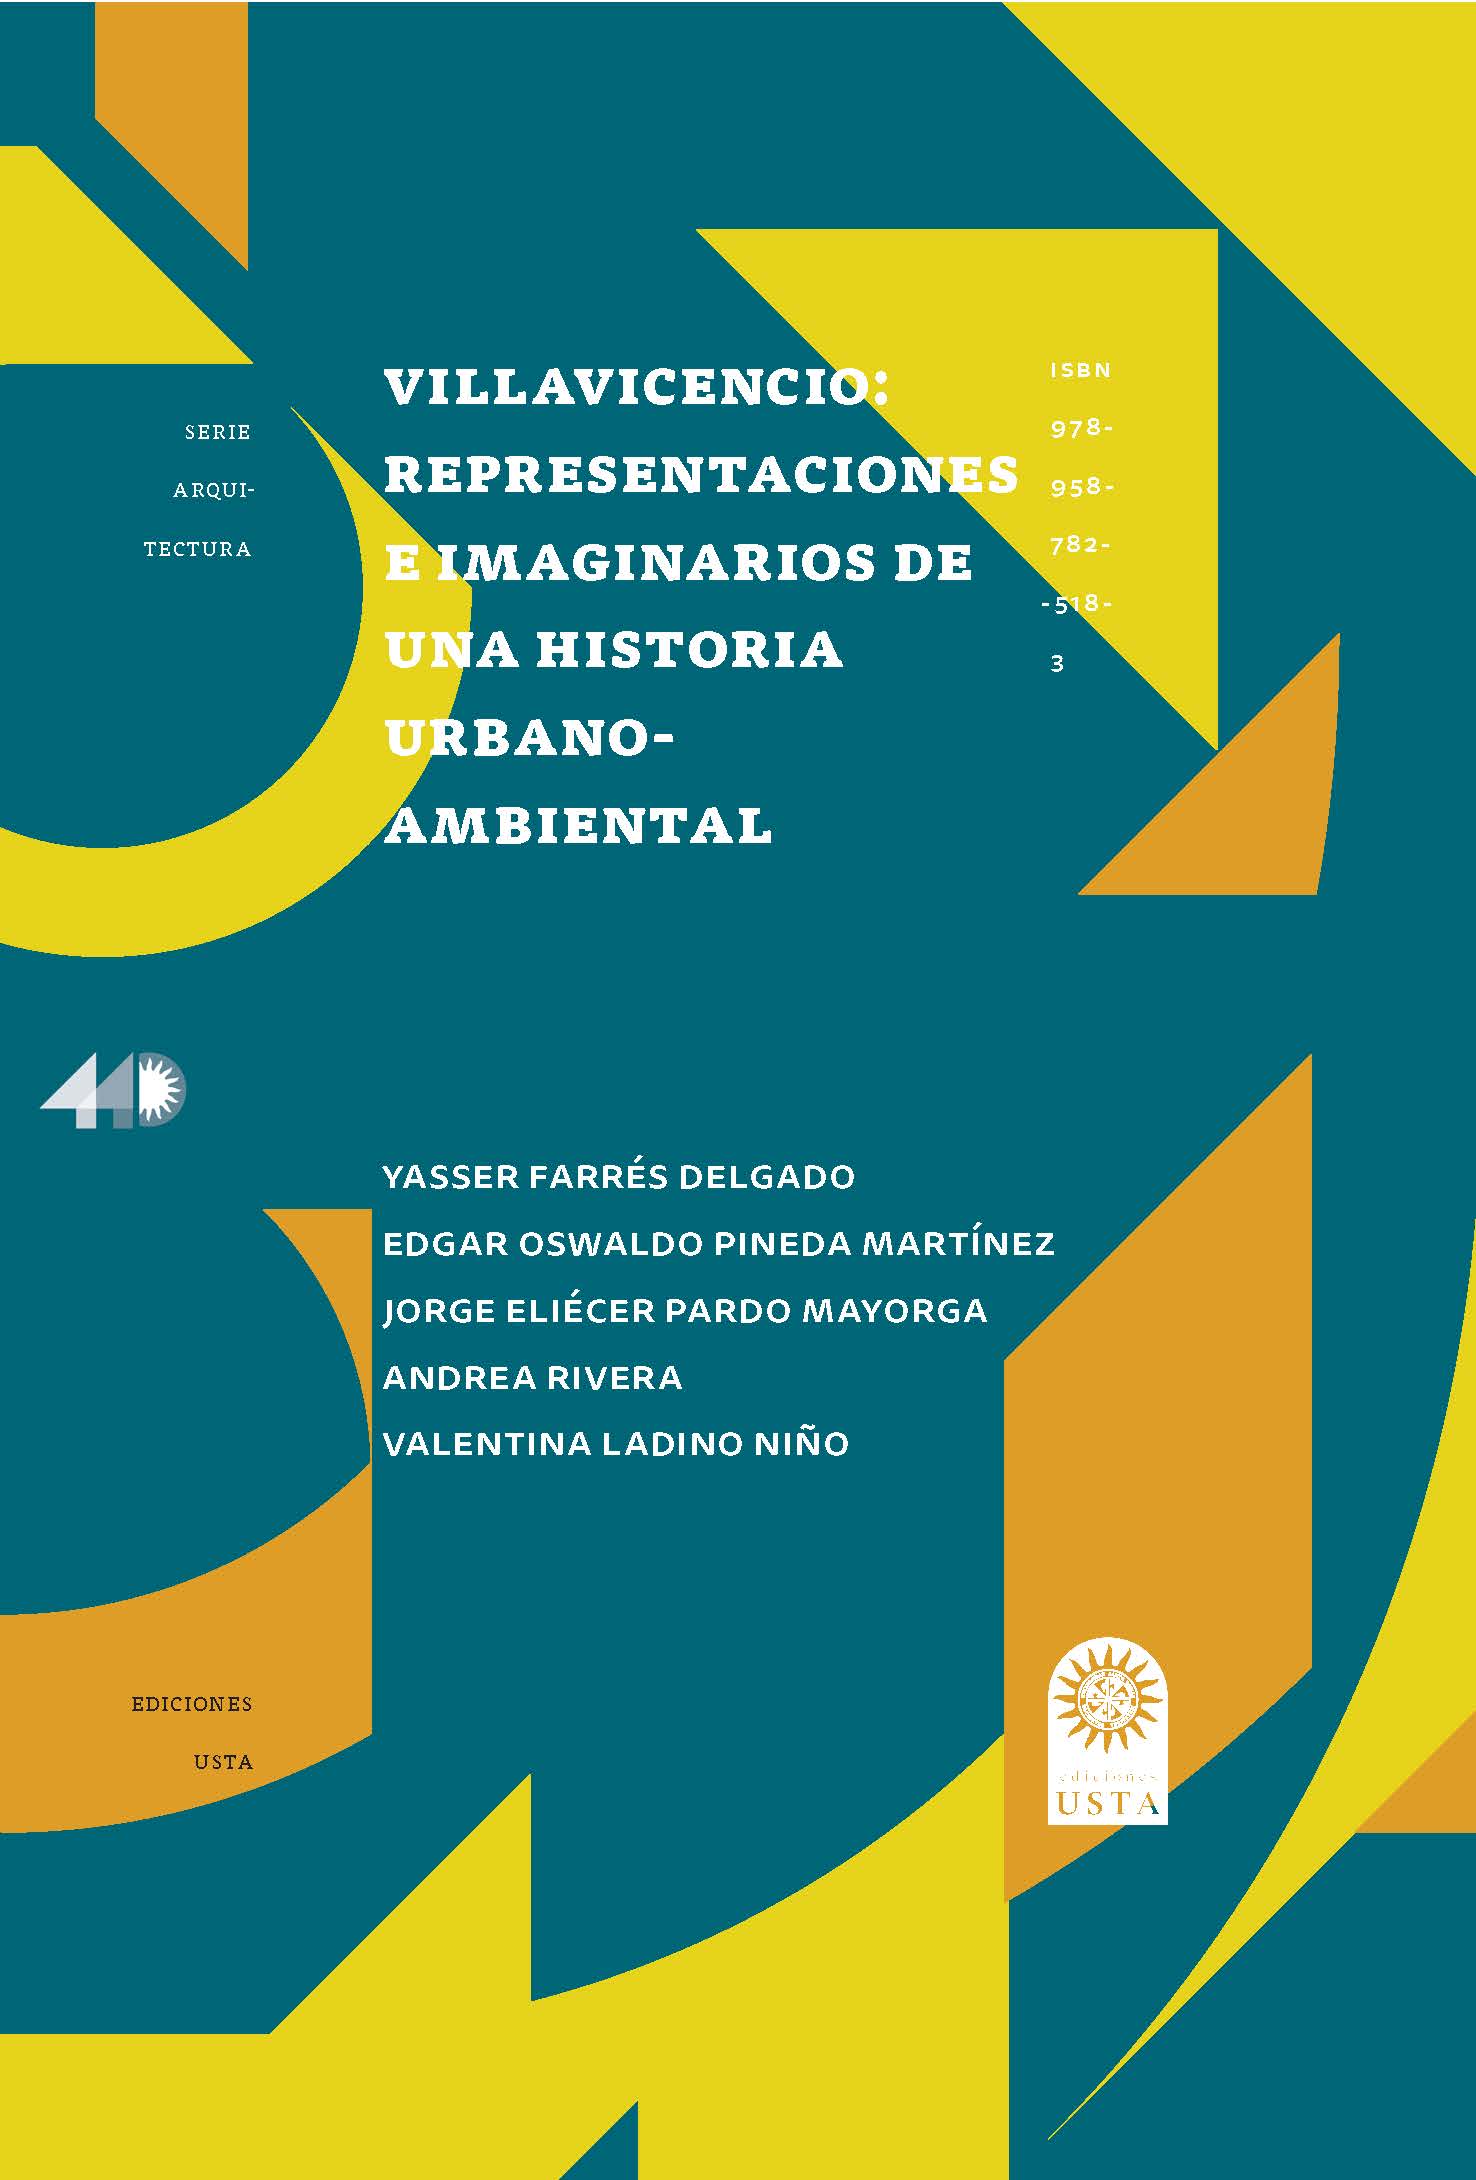 Villavicencio: Representaciones e imaginarios 